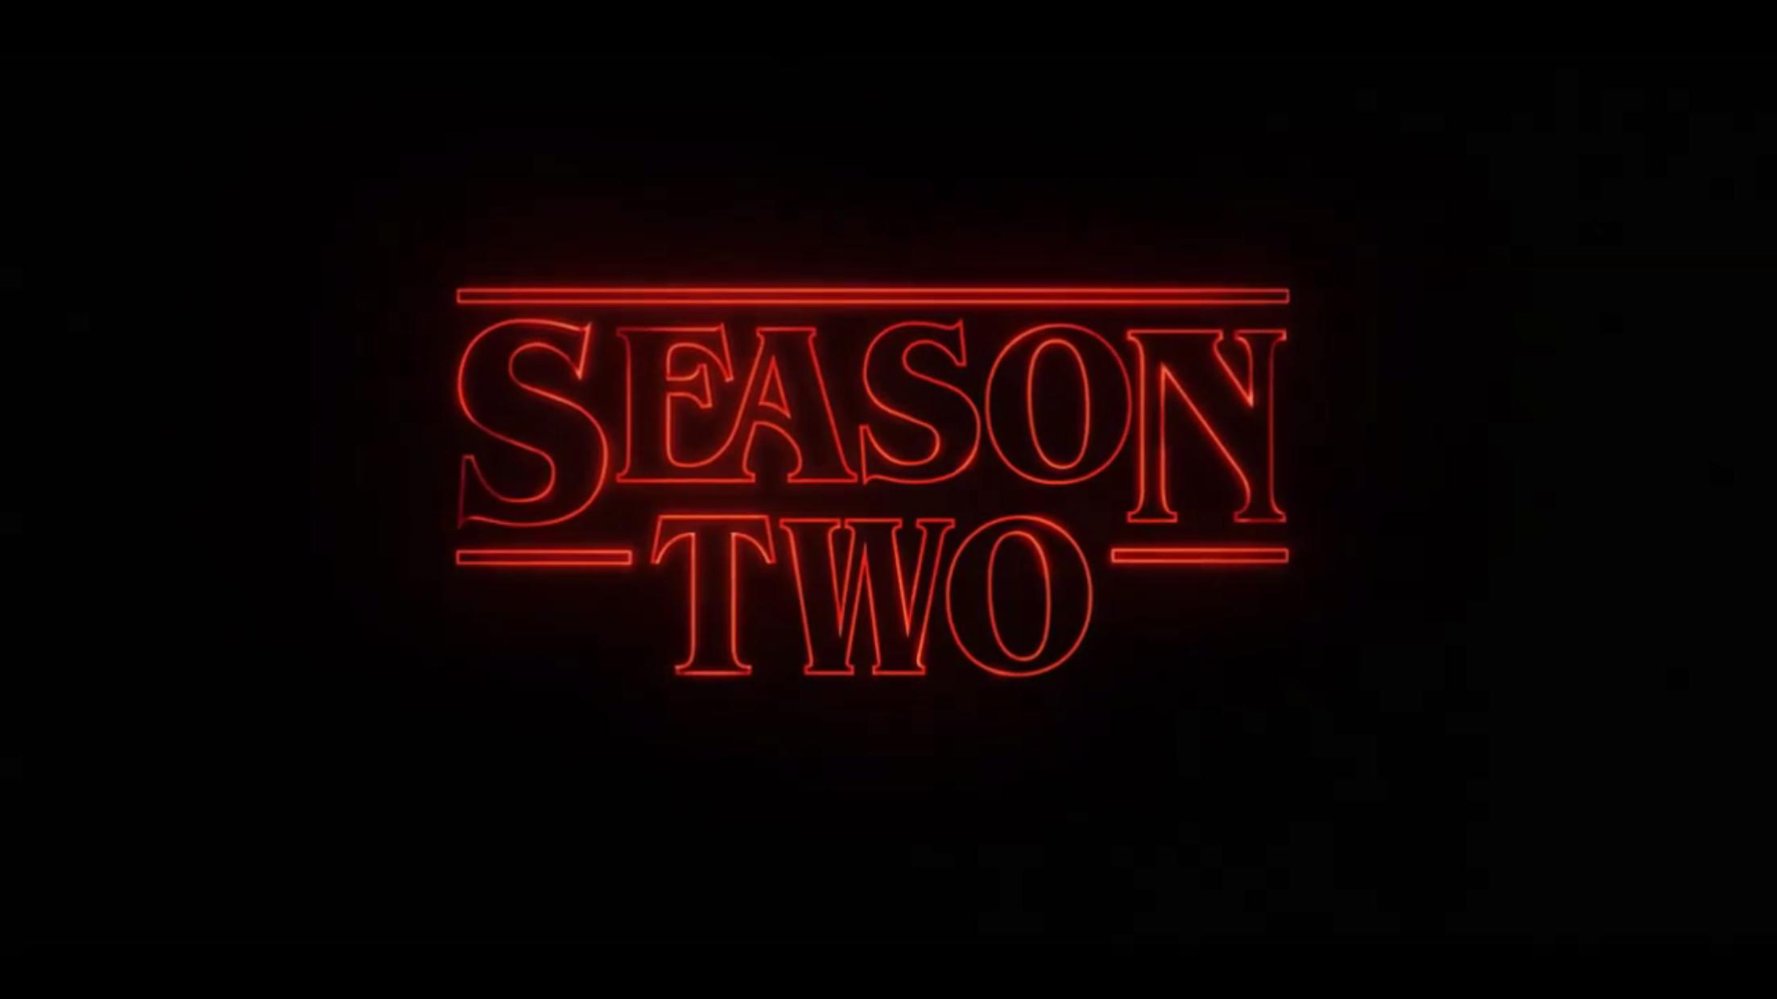 Stranger Things season 2 details revealed